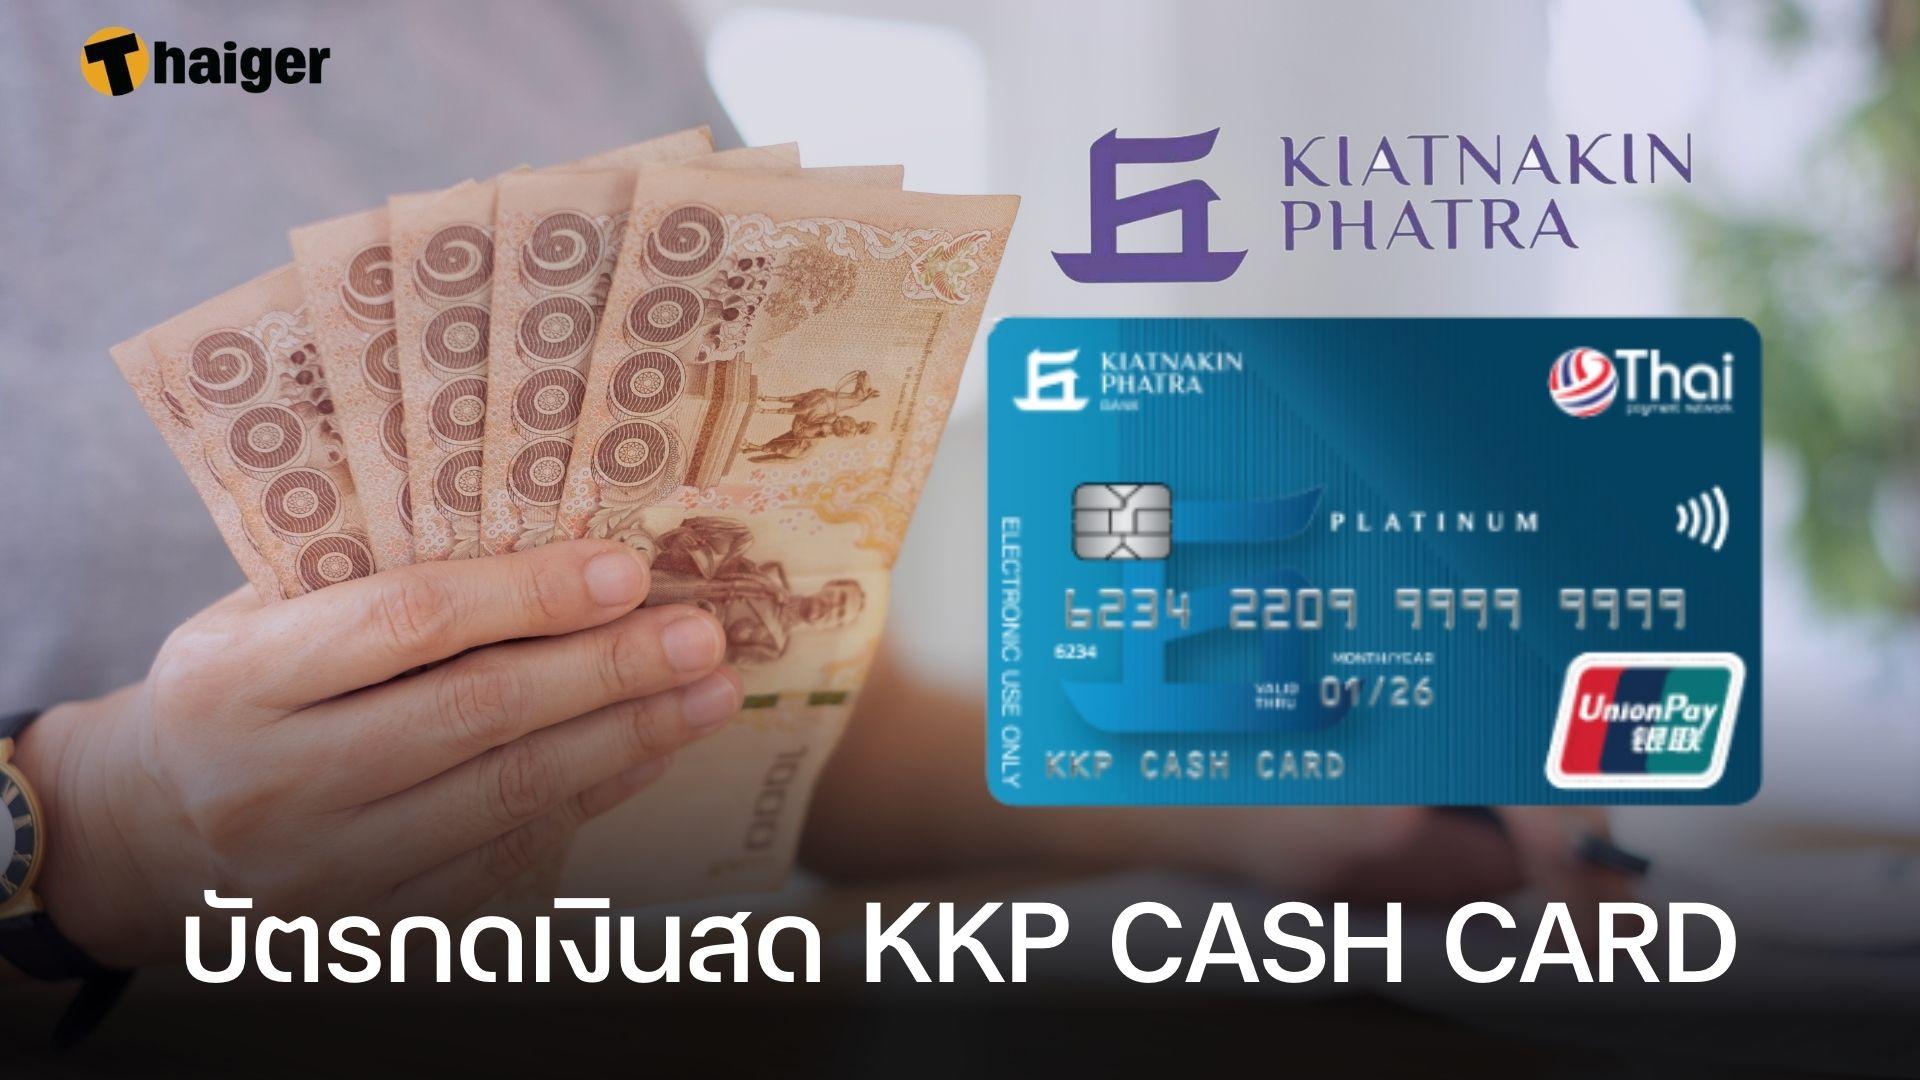 บัตรกดเงินสด Kkp Cash Card เงินก้อนพร้อมใช้ ดอกเบี้ย 0.89% ต่อเดือน |  Thaiger ข่าวไทย